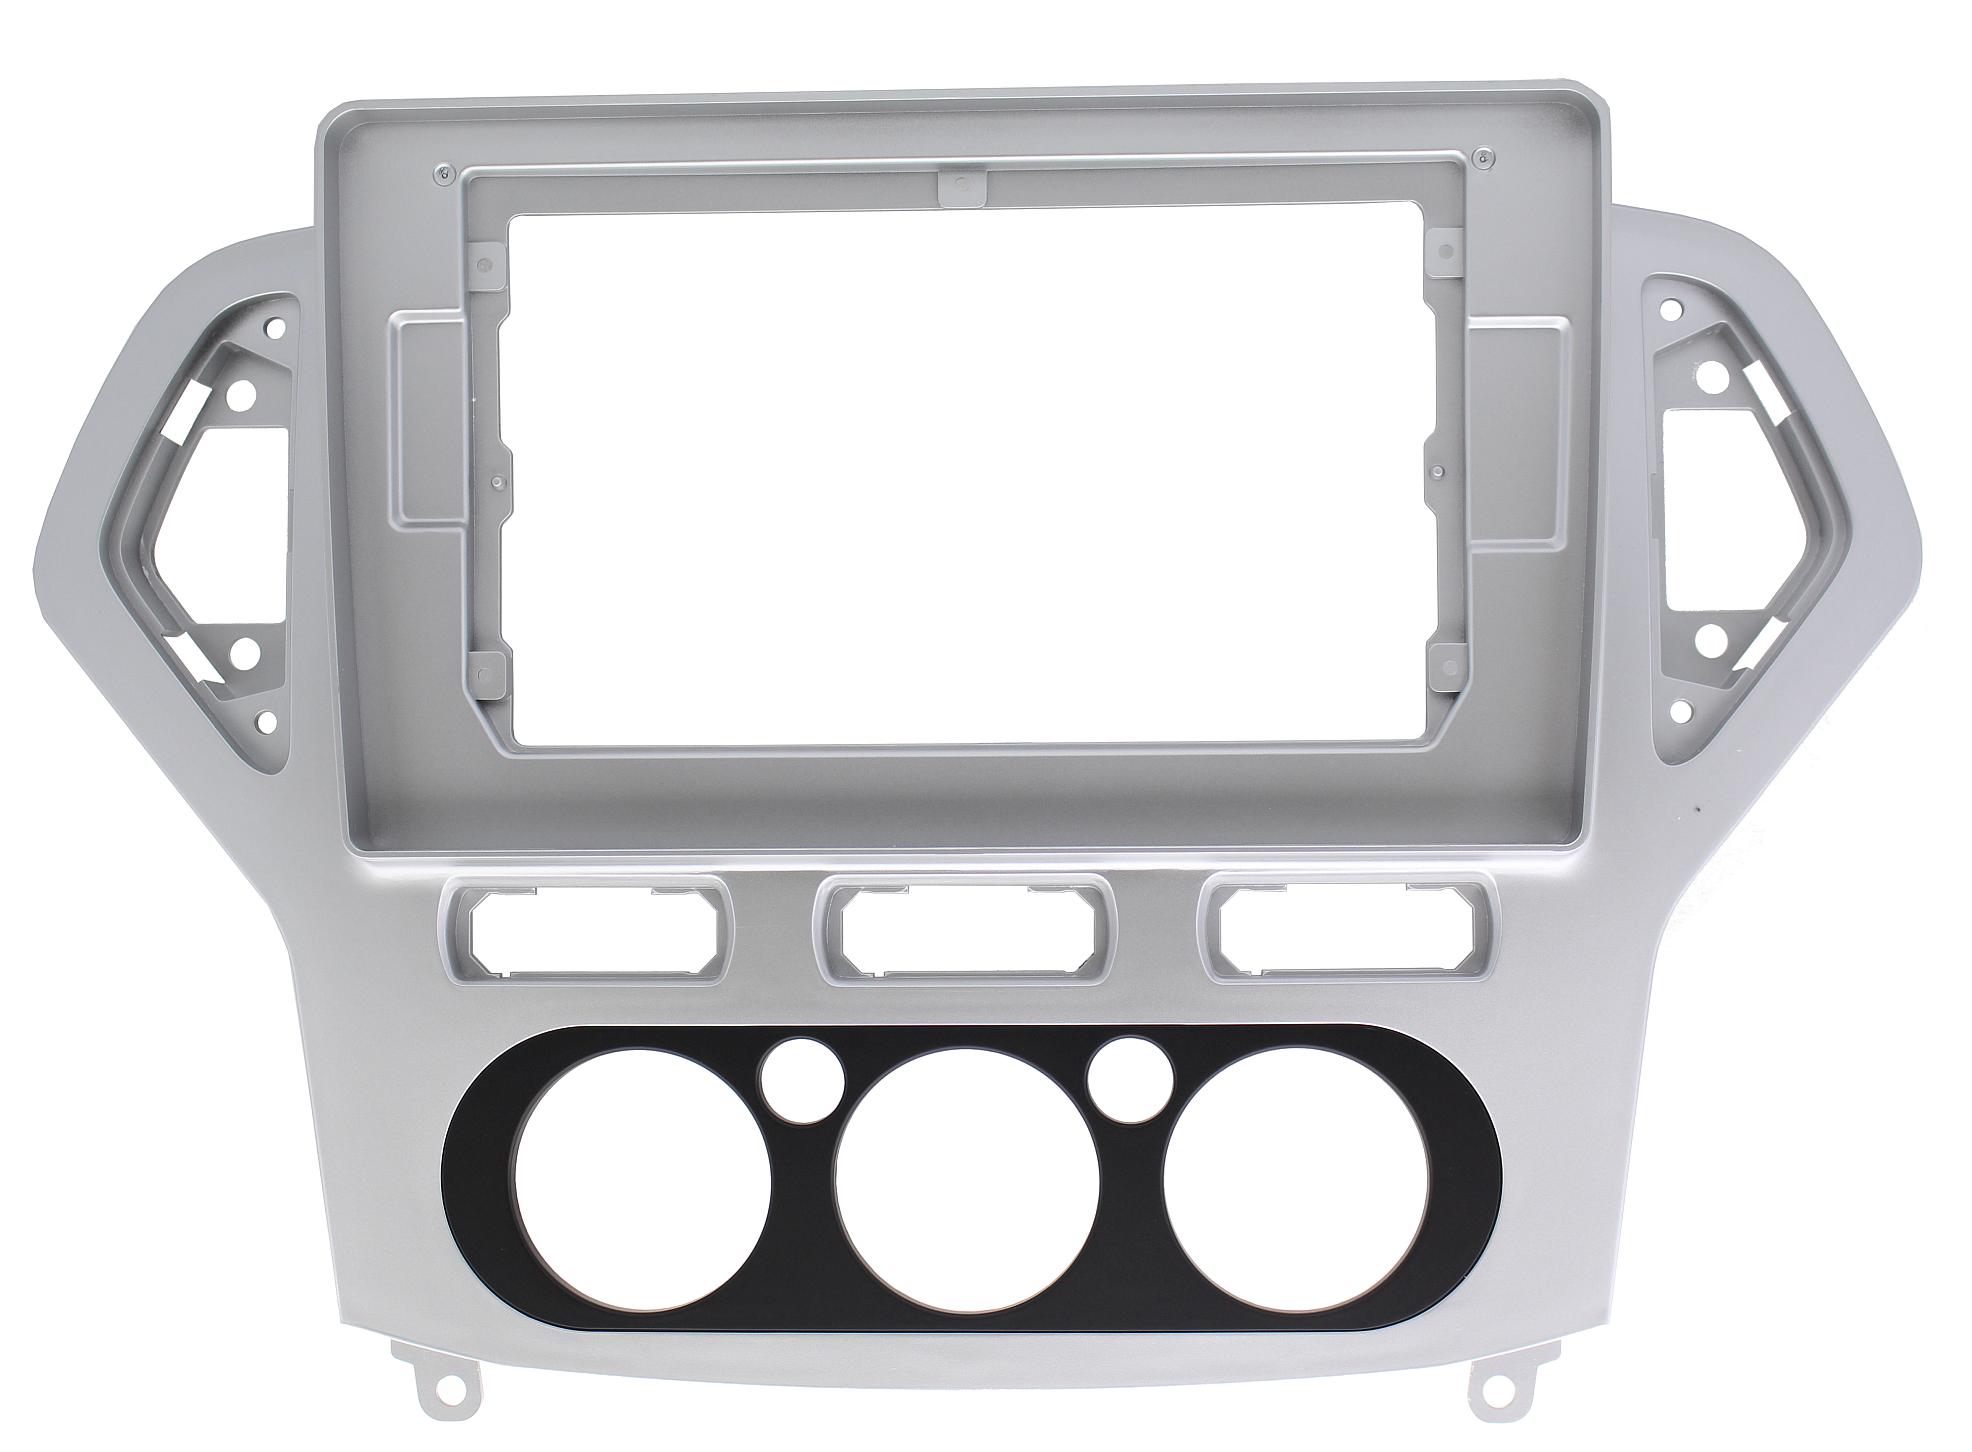 Рамка для установки в Ford Mondeo 2007 - 2010 серебристая (авто без климат контроля) MFA дисплея